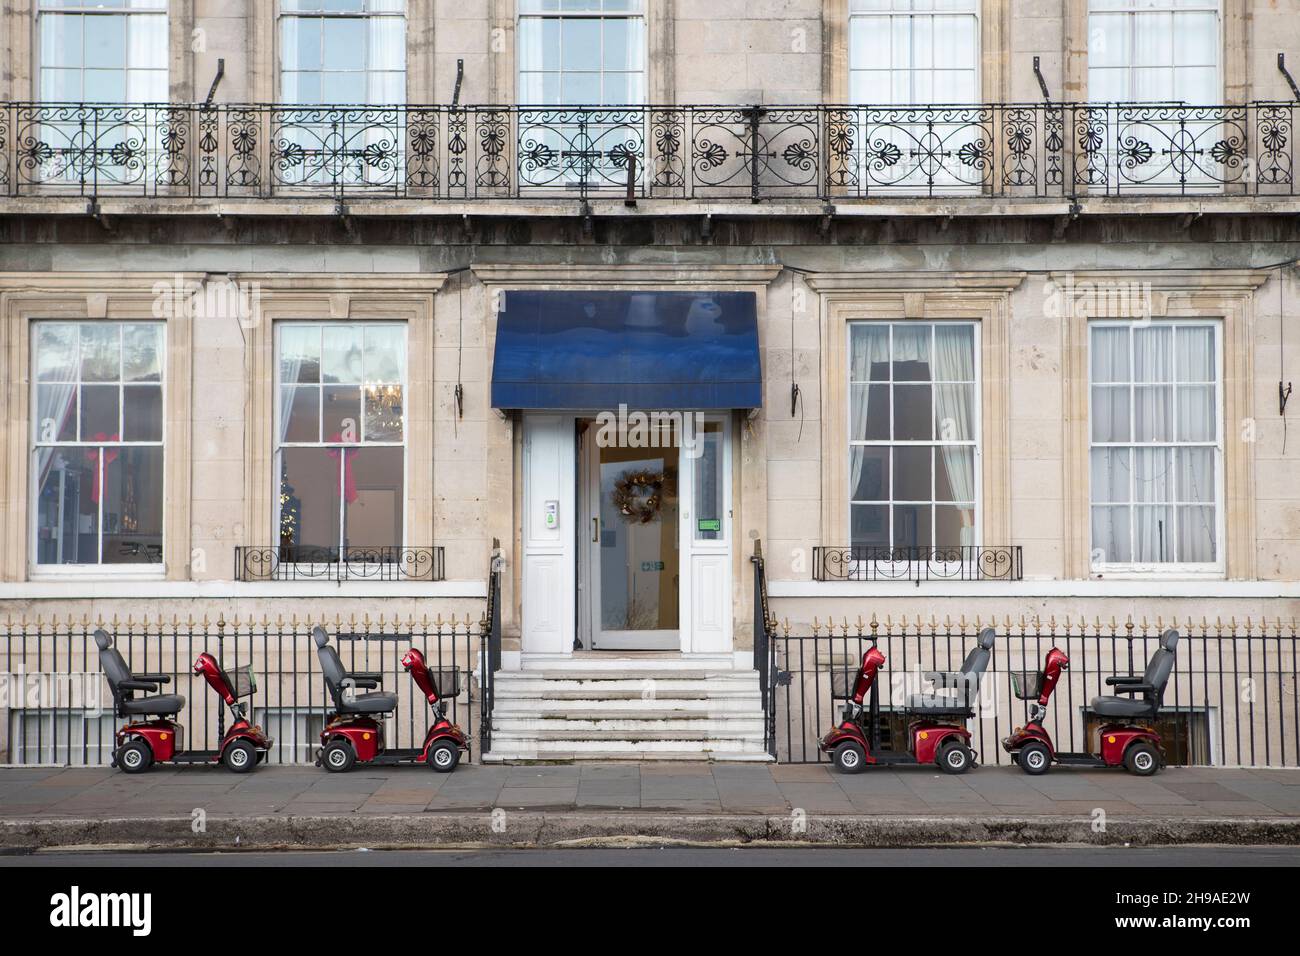 Voitures invalides garées sur le trottoir devant un hôtel de la côte sud en Angleterre, au Royaume-Uni Banque D'Images